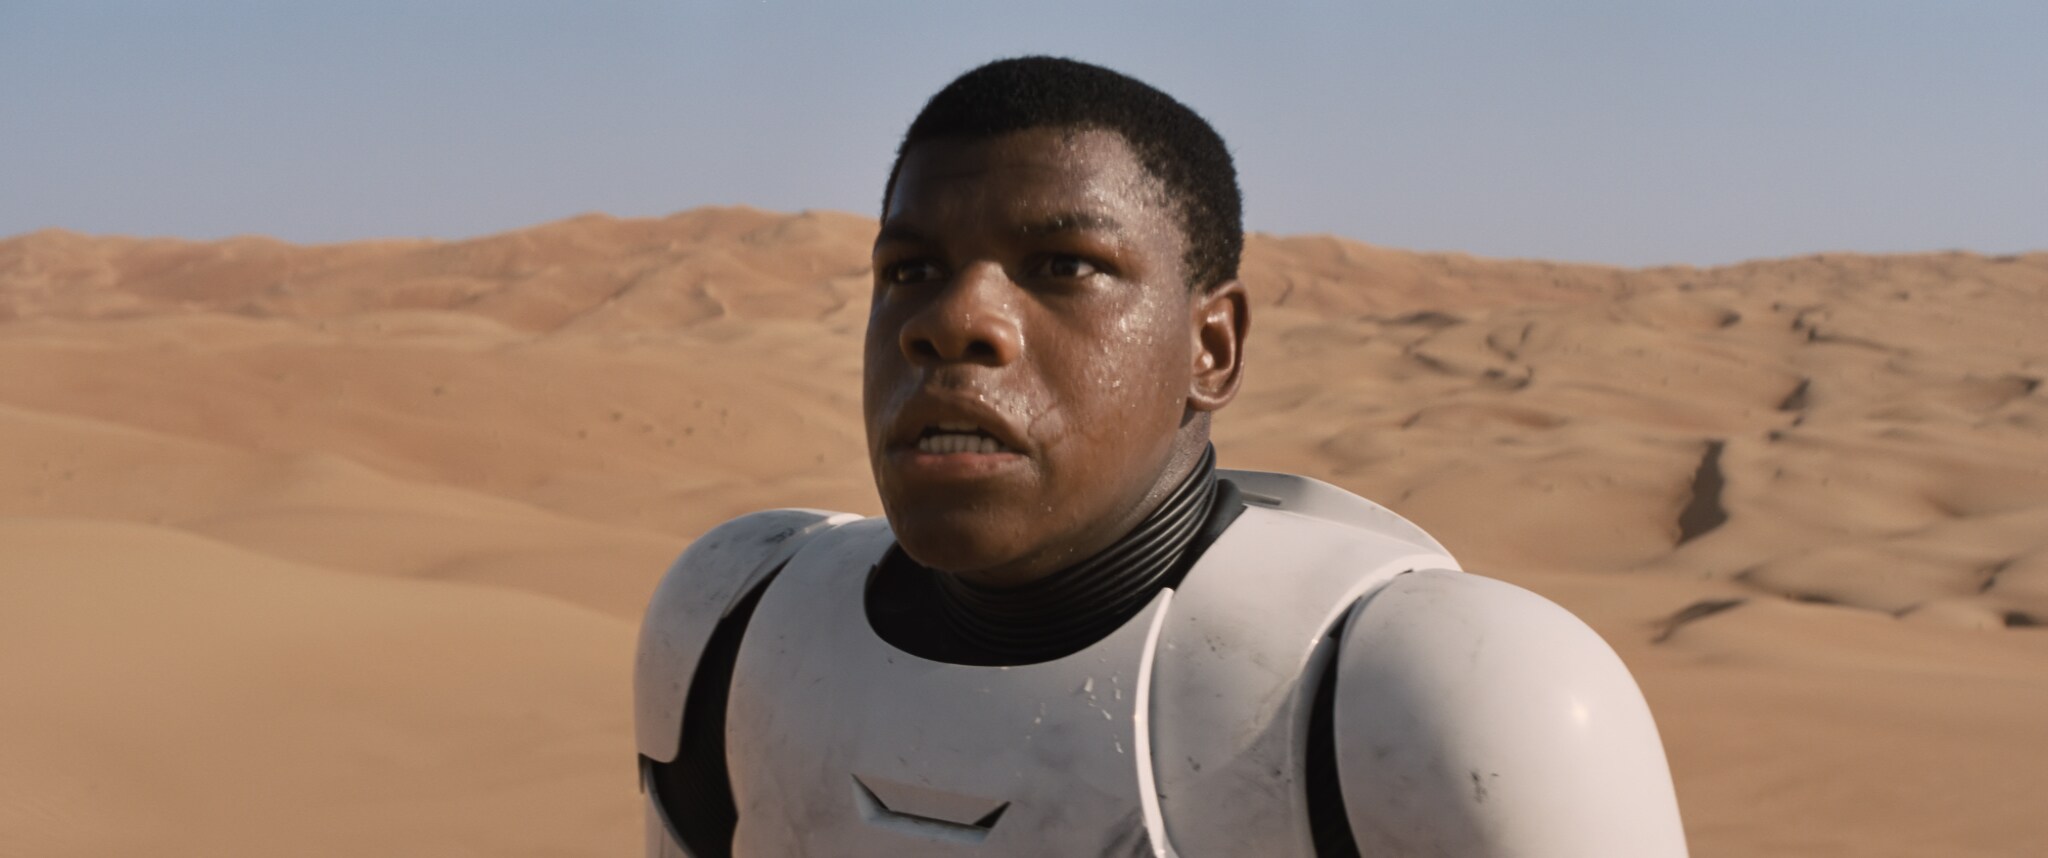 John Boyega as Finn in stormtrooper armor on Jakku.